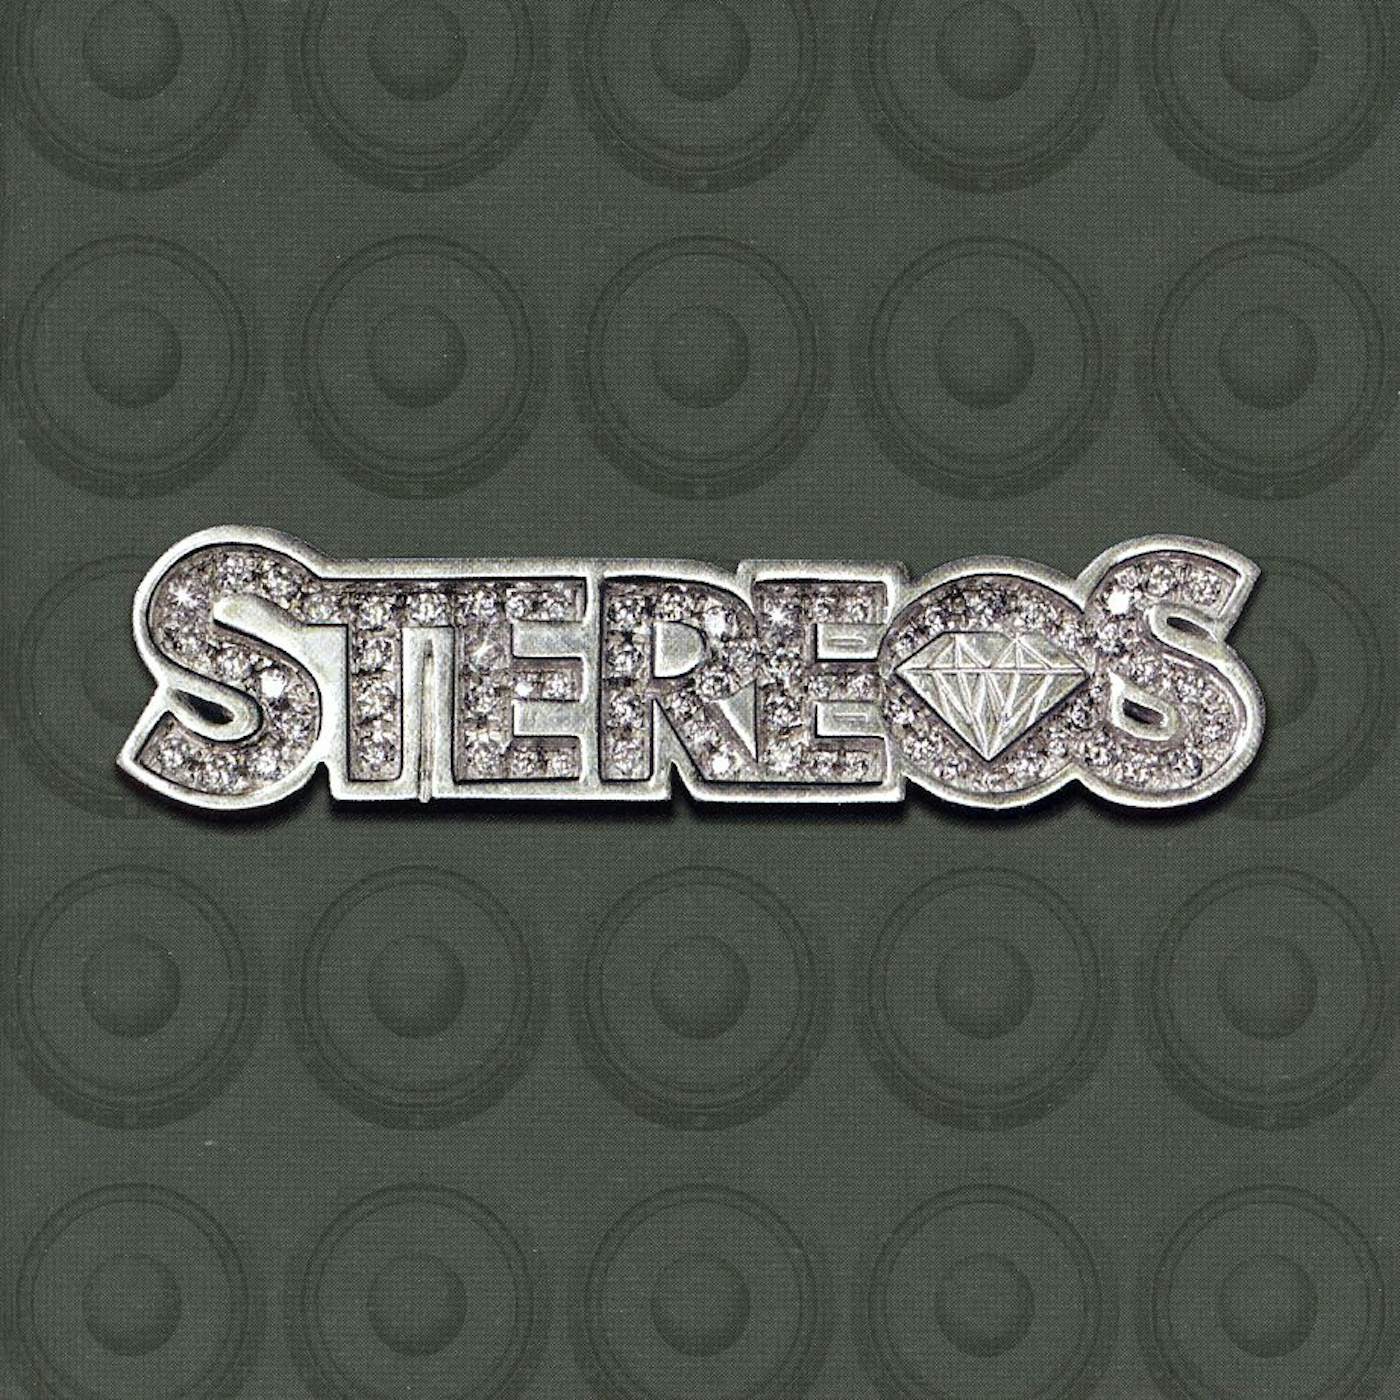 STEREOS CD